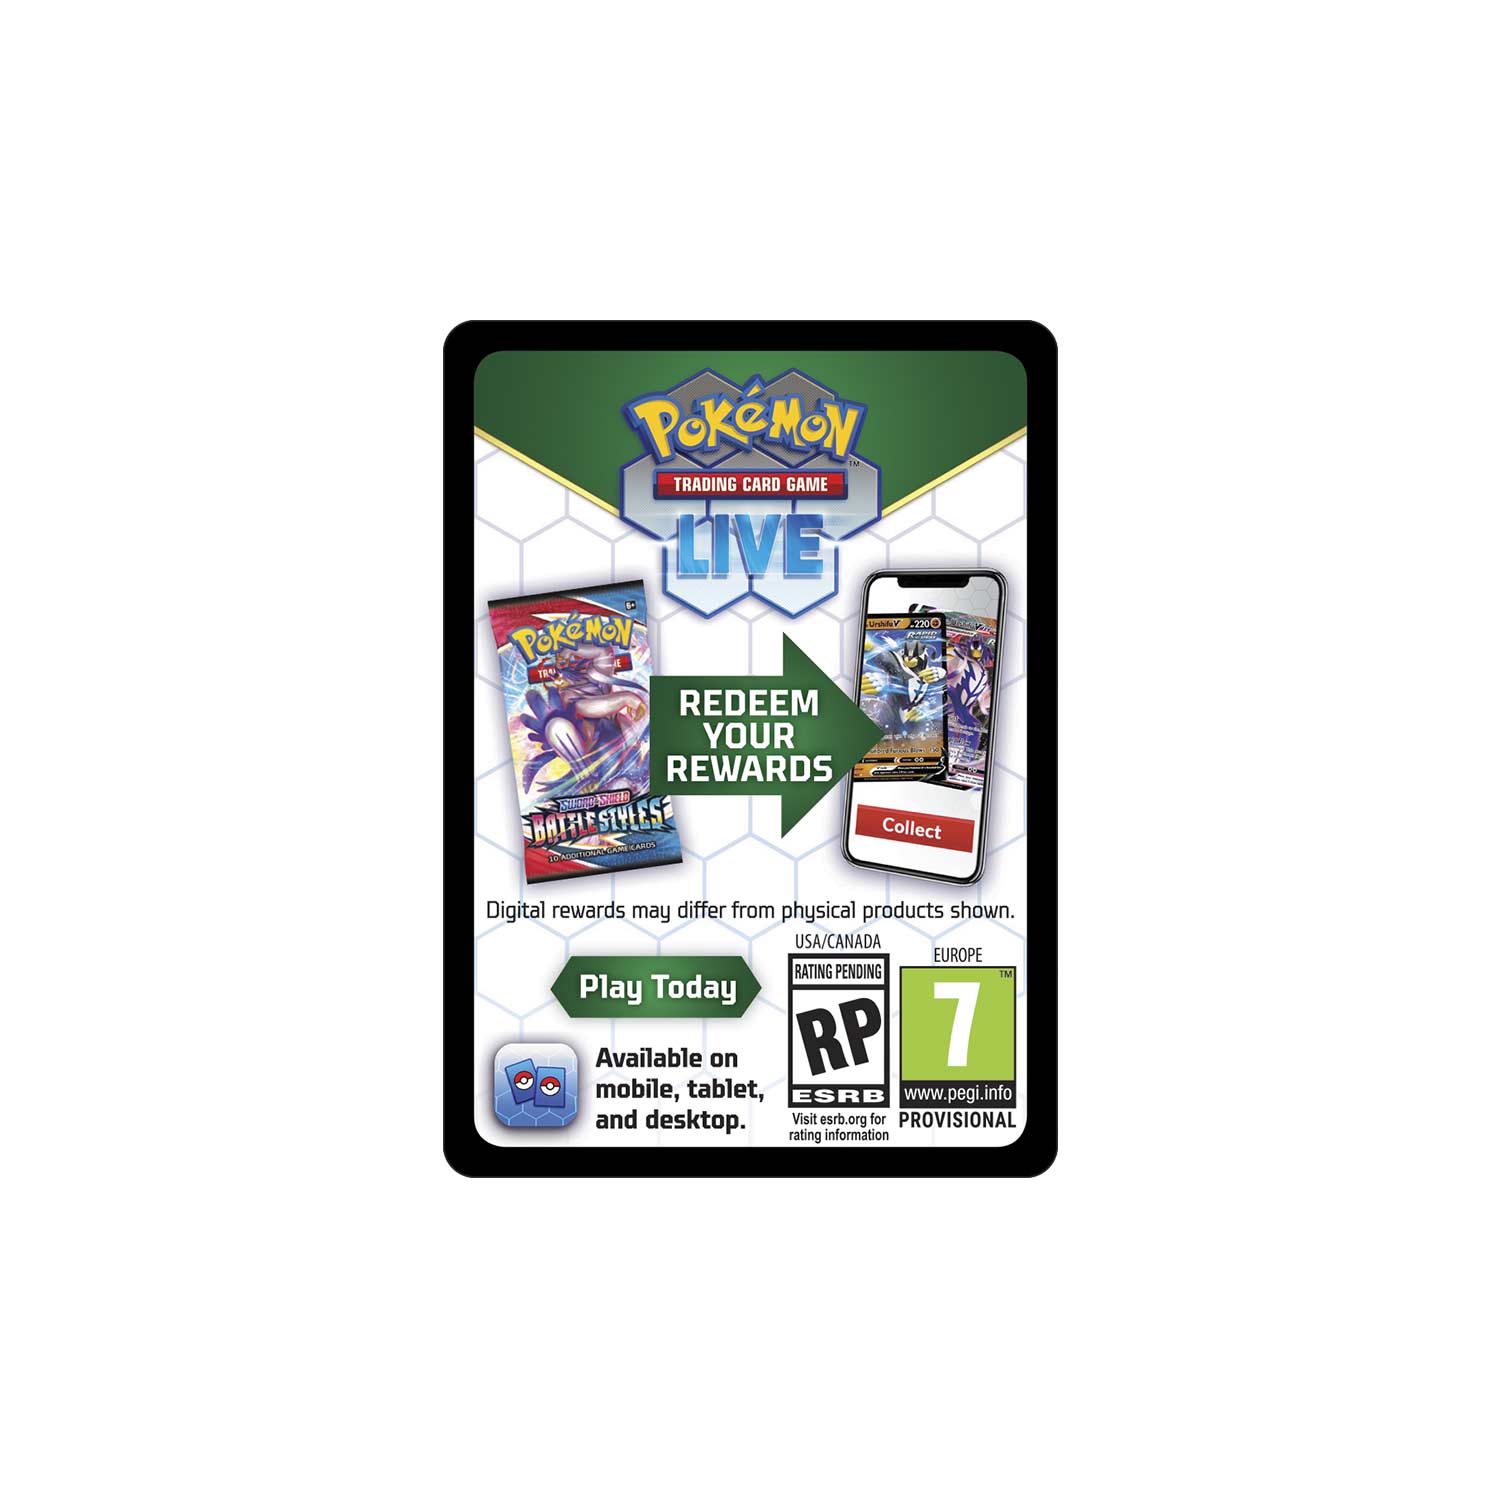 Pokemon TCG: Radiant Eevee Premium Collection Playmat - Pokemon